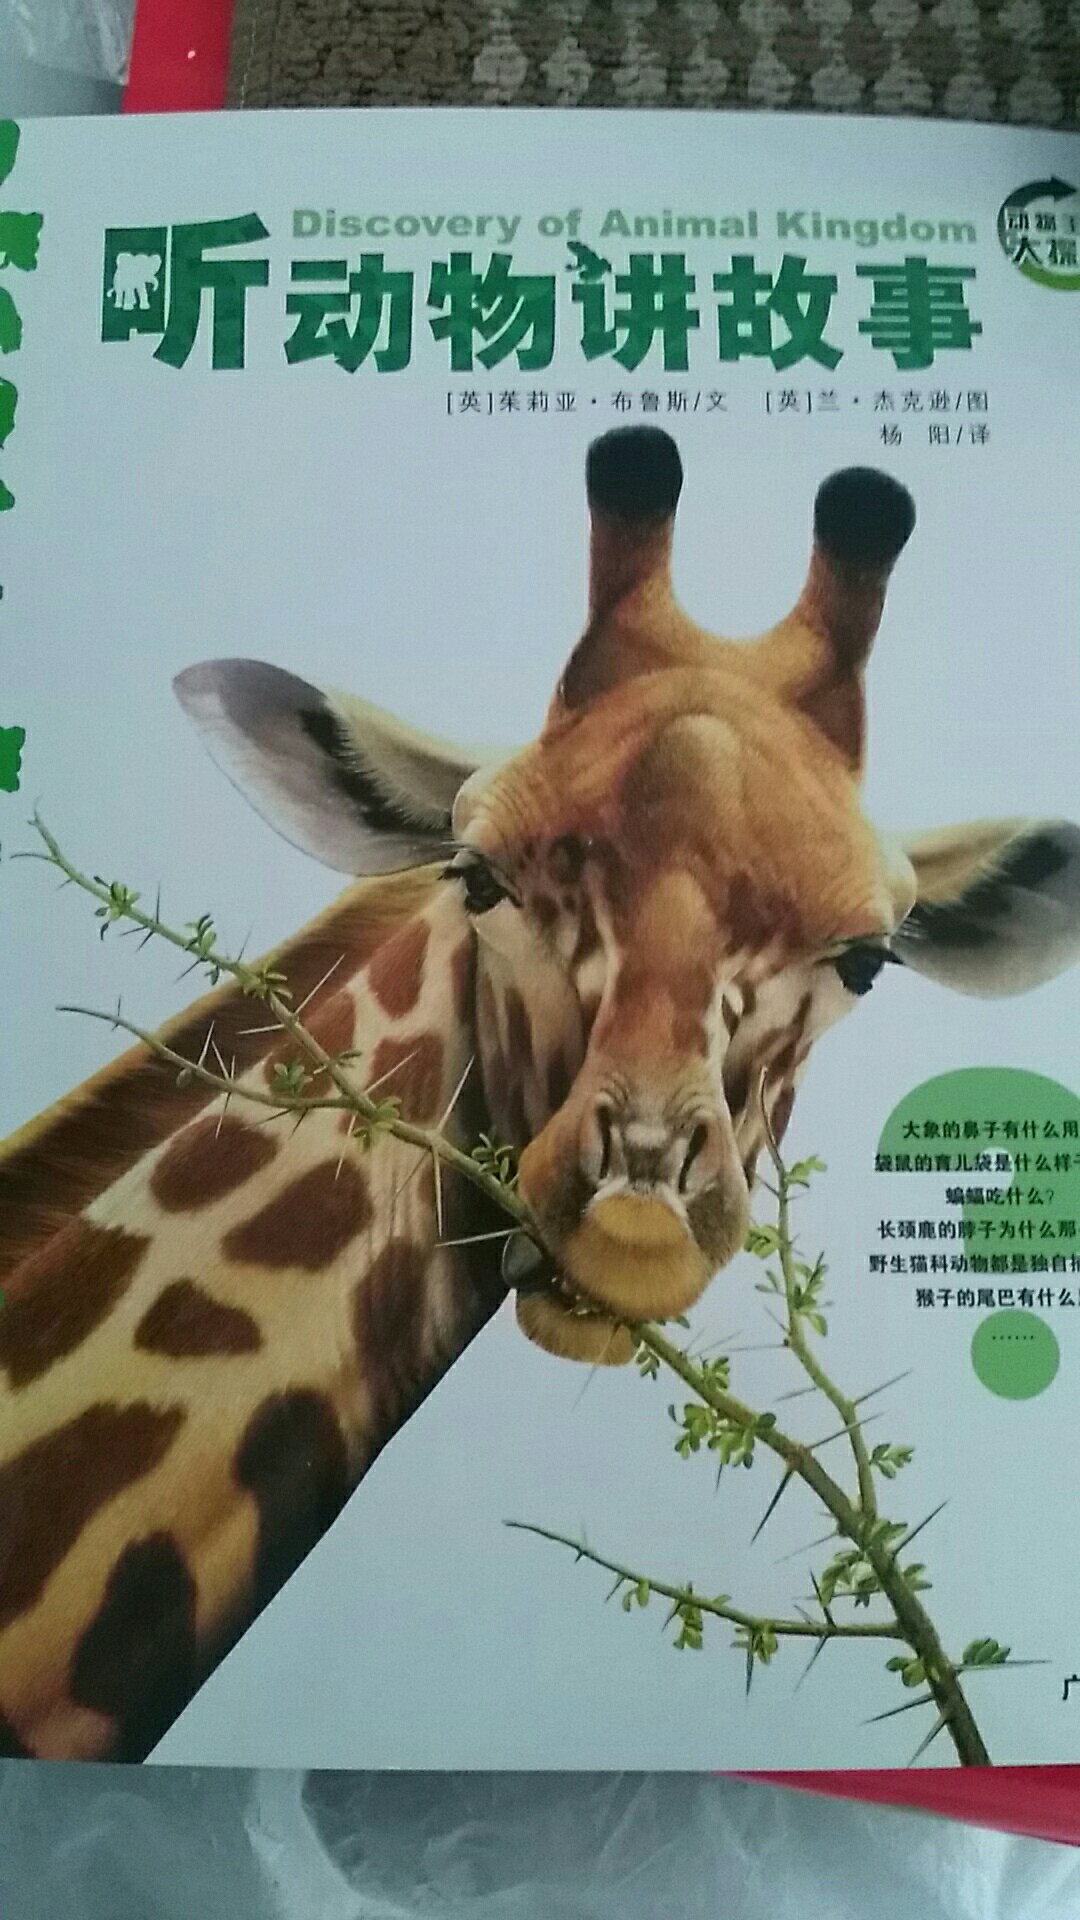 就是动物科普书，图片比较细致，文字是稍微枯燥的，但作为科普书还可以。